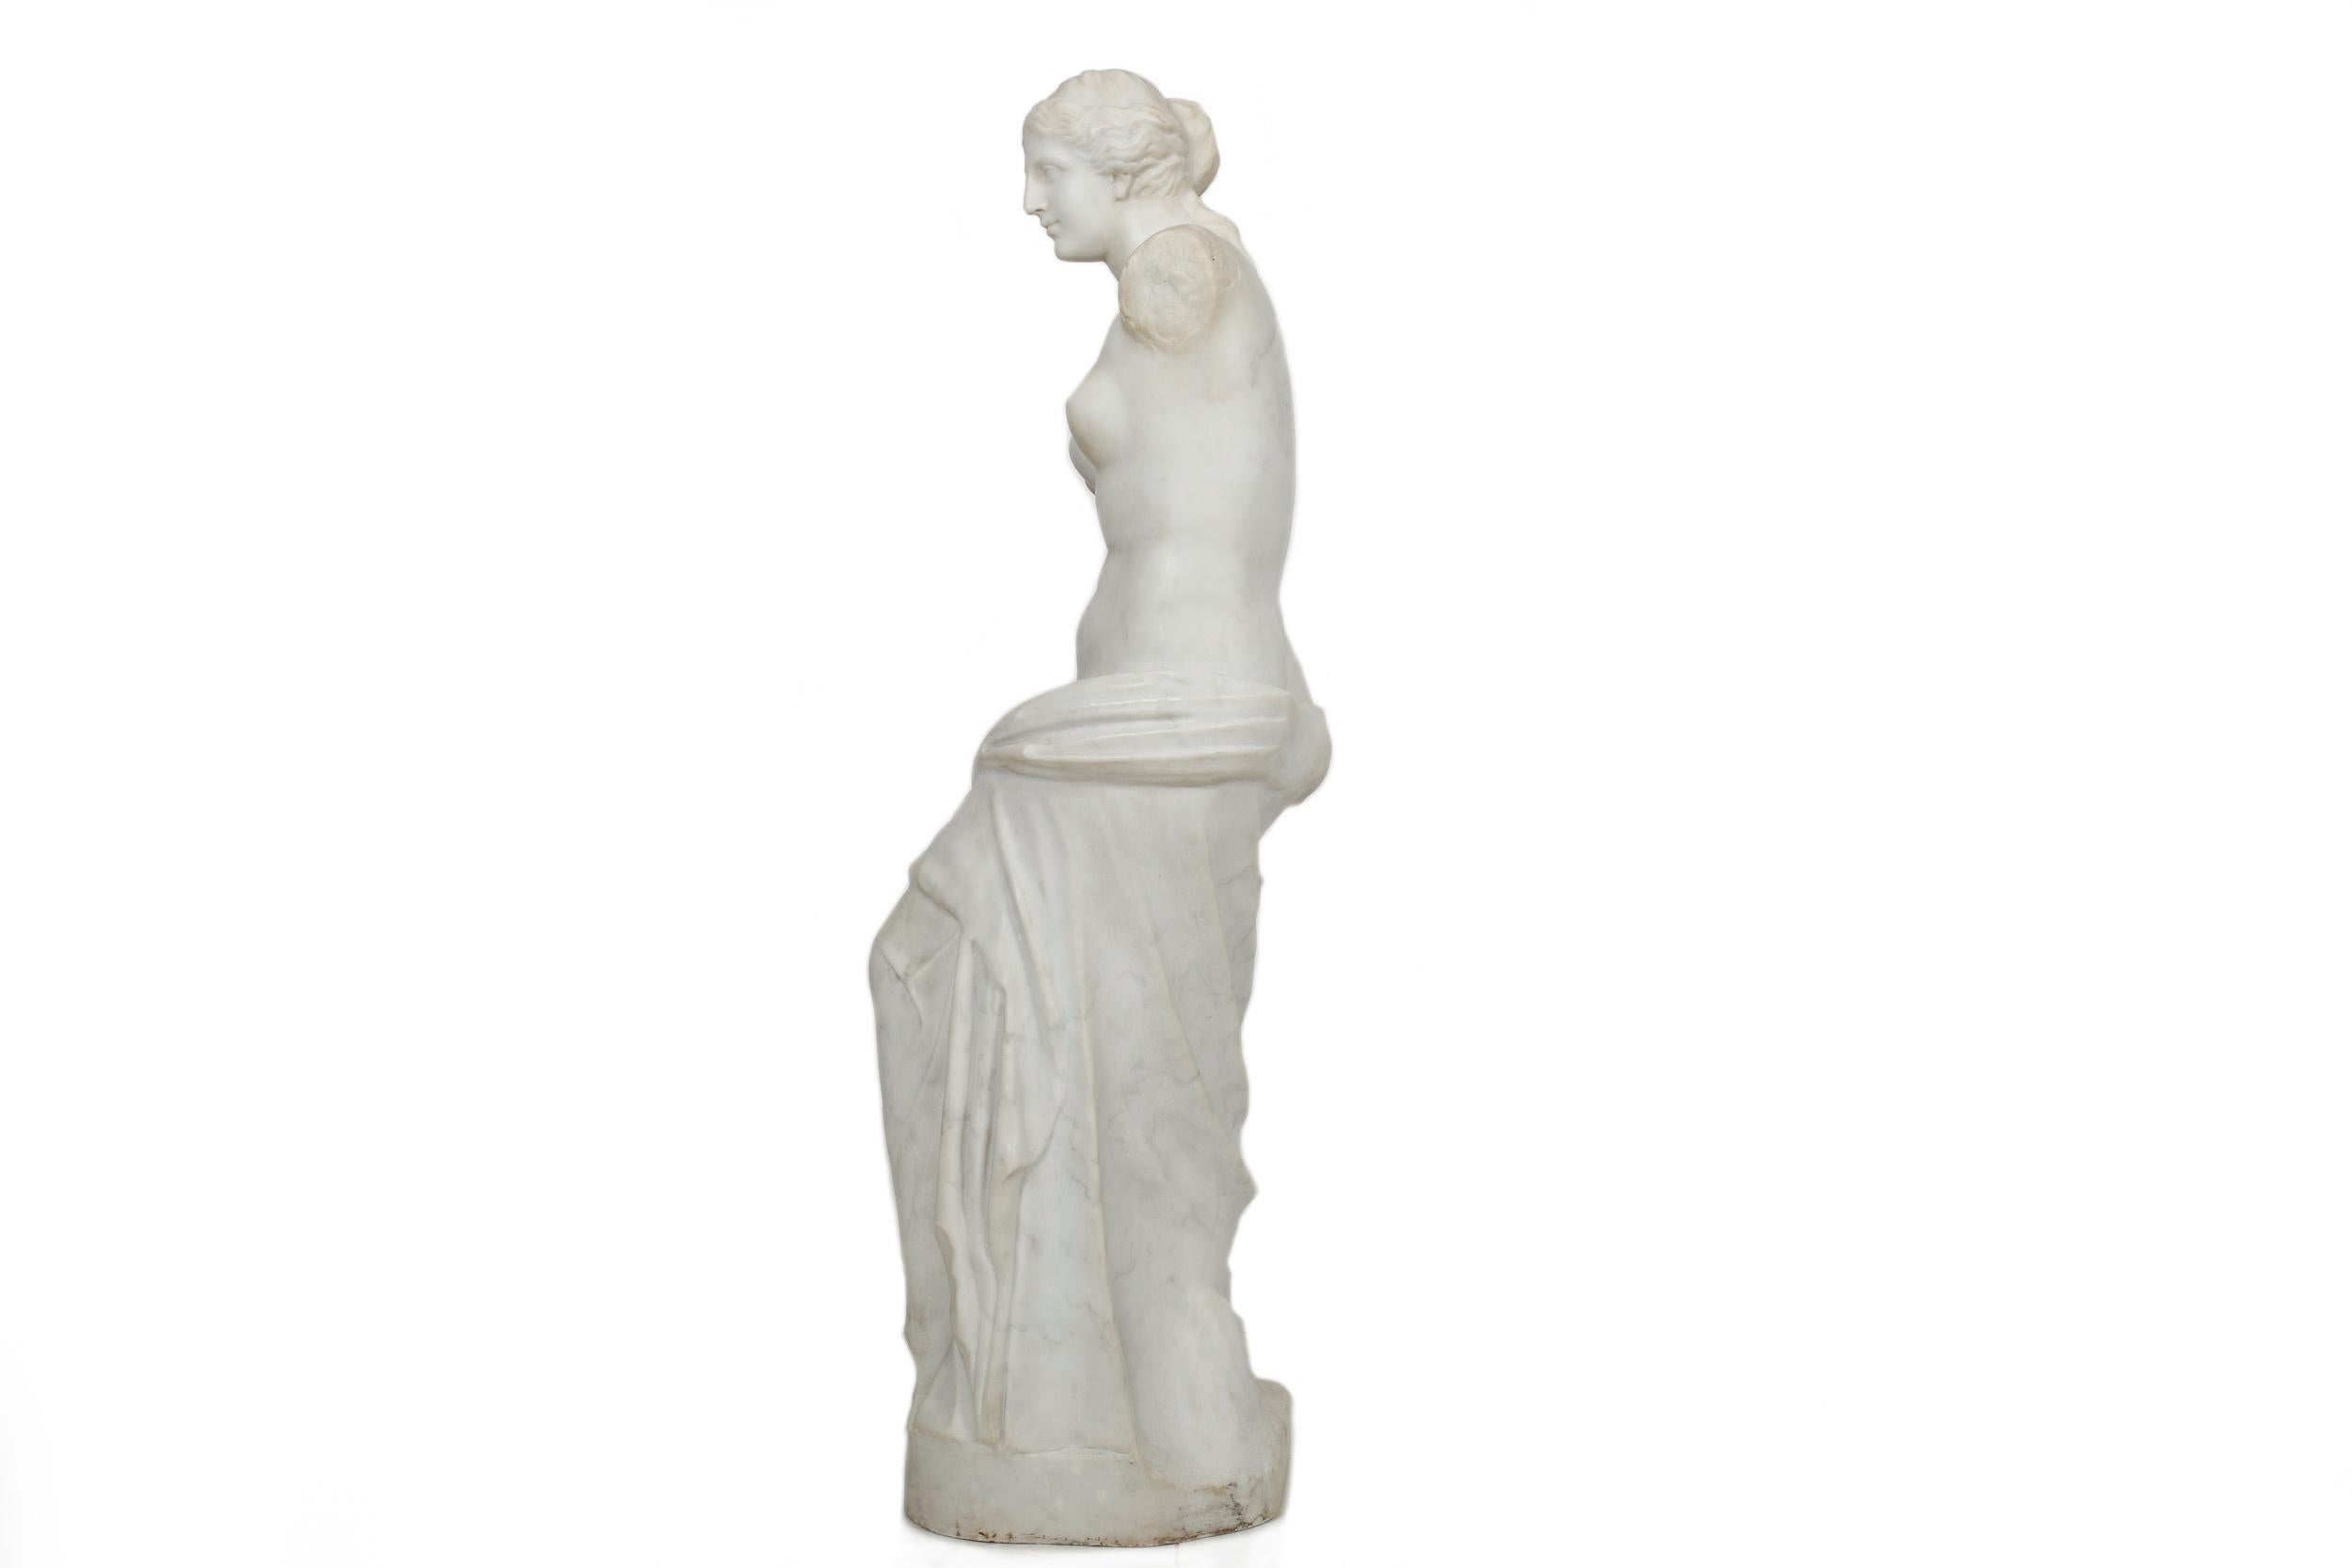 This large antique sculpture of Venus de Milo, or Aphrodite de Milos to the Romans, is a substantial 3/4 scale statue measuring in at 44